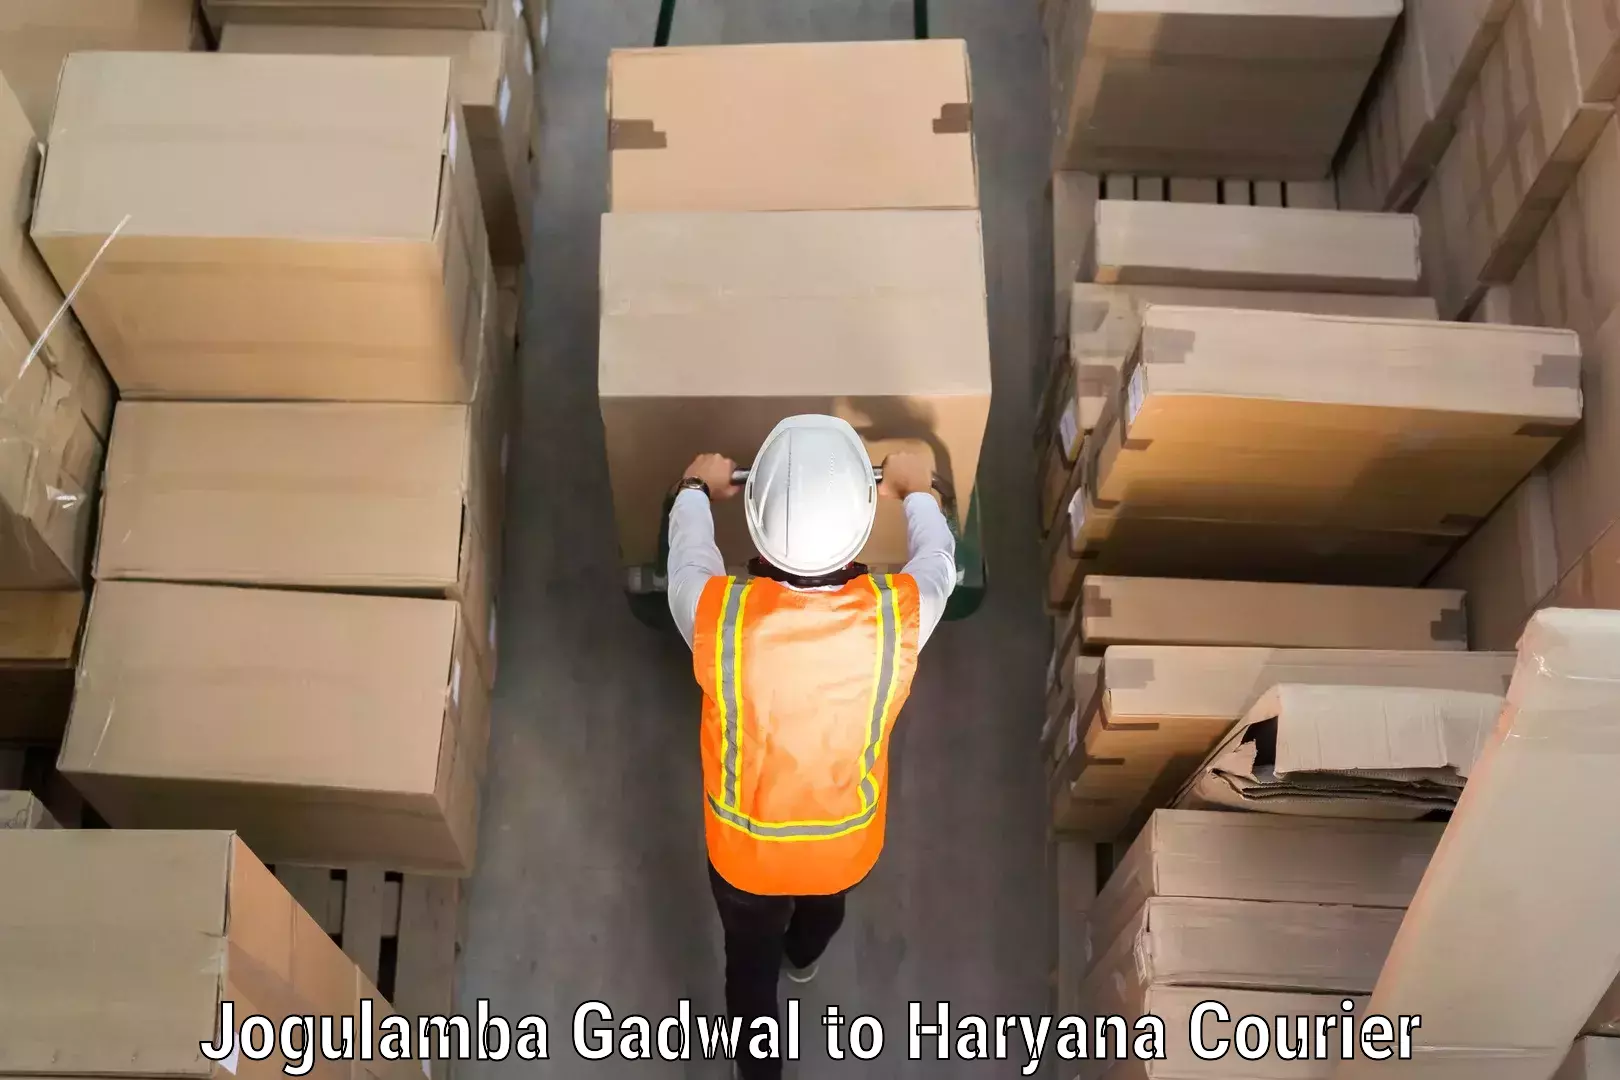 Luggage shipment tracking Jogulamba Gadwal to Panchkula